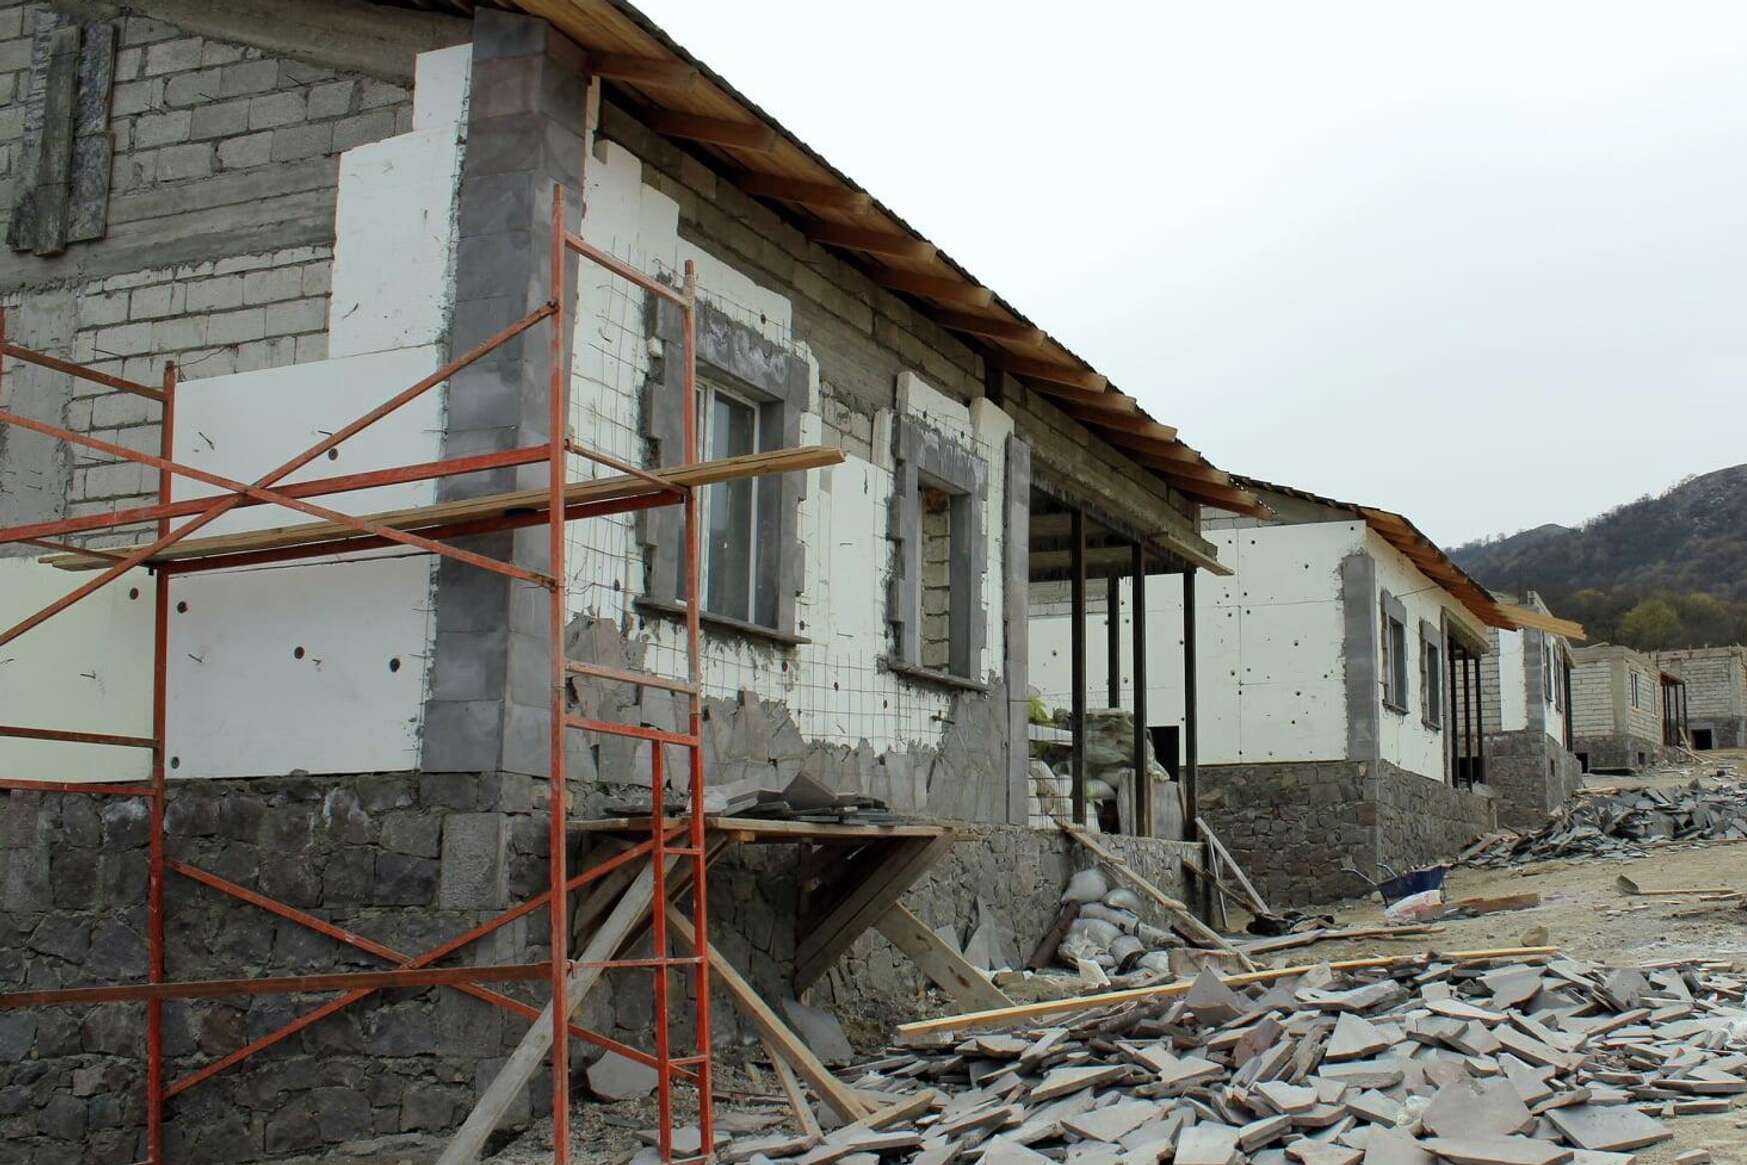 Կառավարությունը գումար է հատկացրել Շուռնուխում սահմանազատման հետևանքով տներից զրկվածների համար թաղամասի կառուցմանը